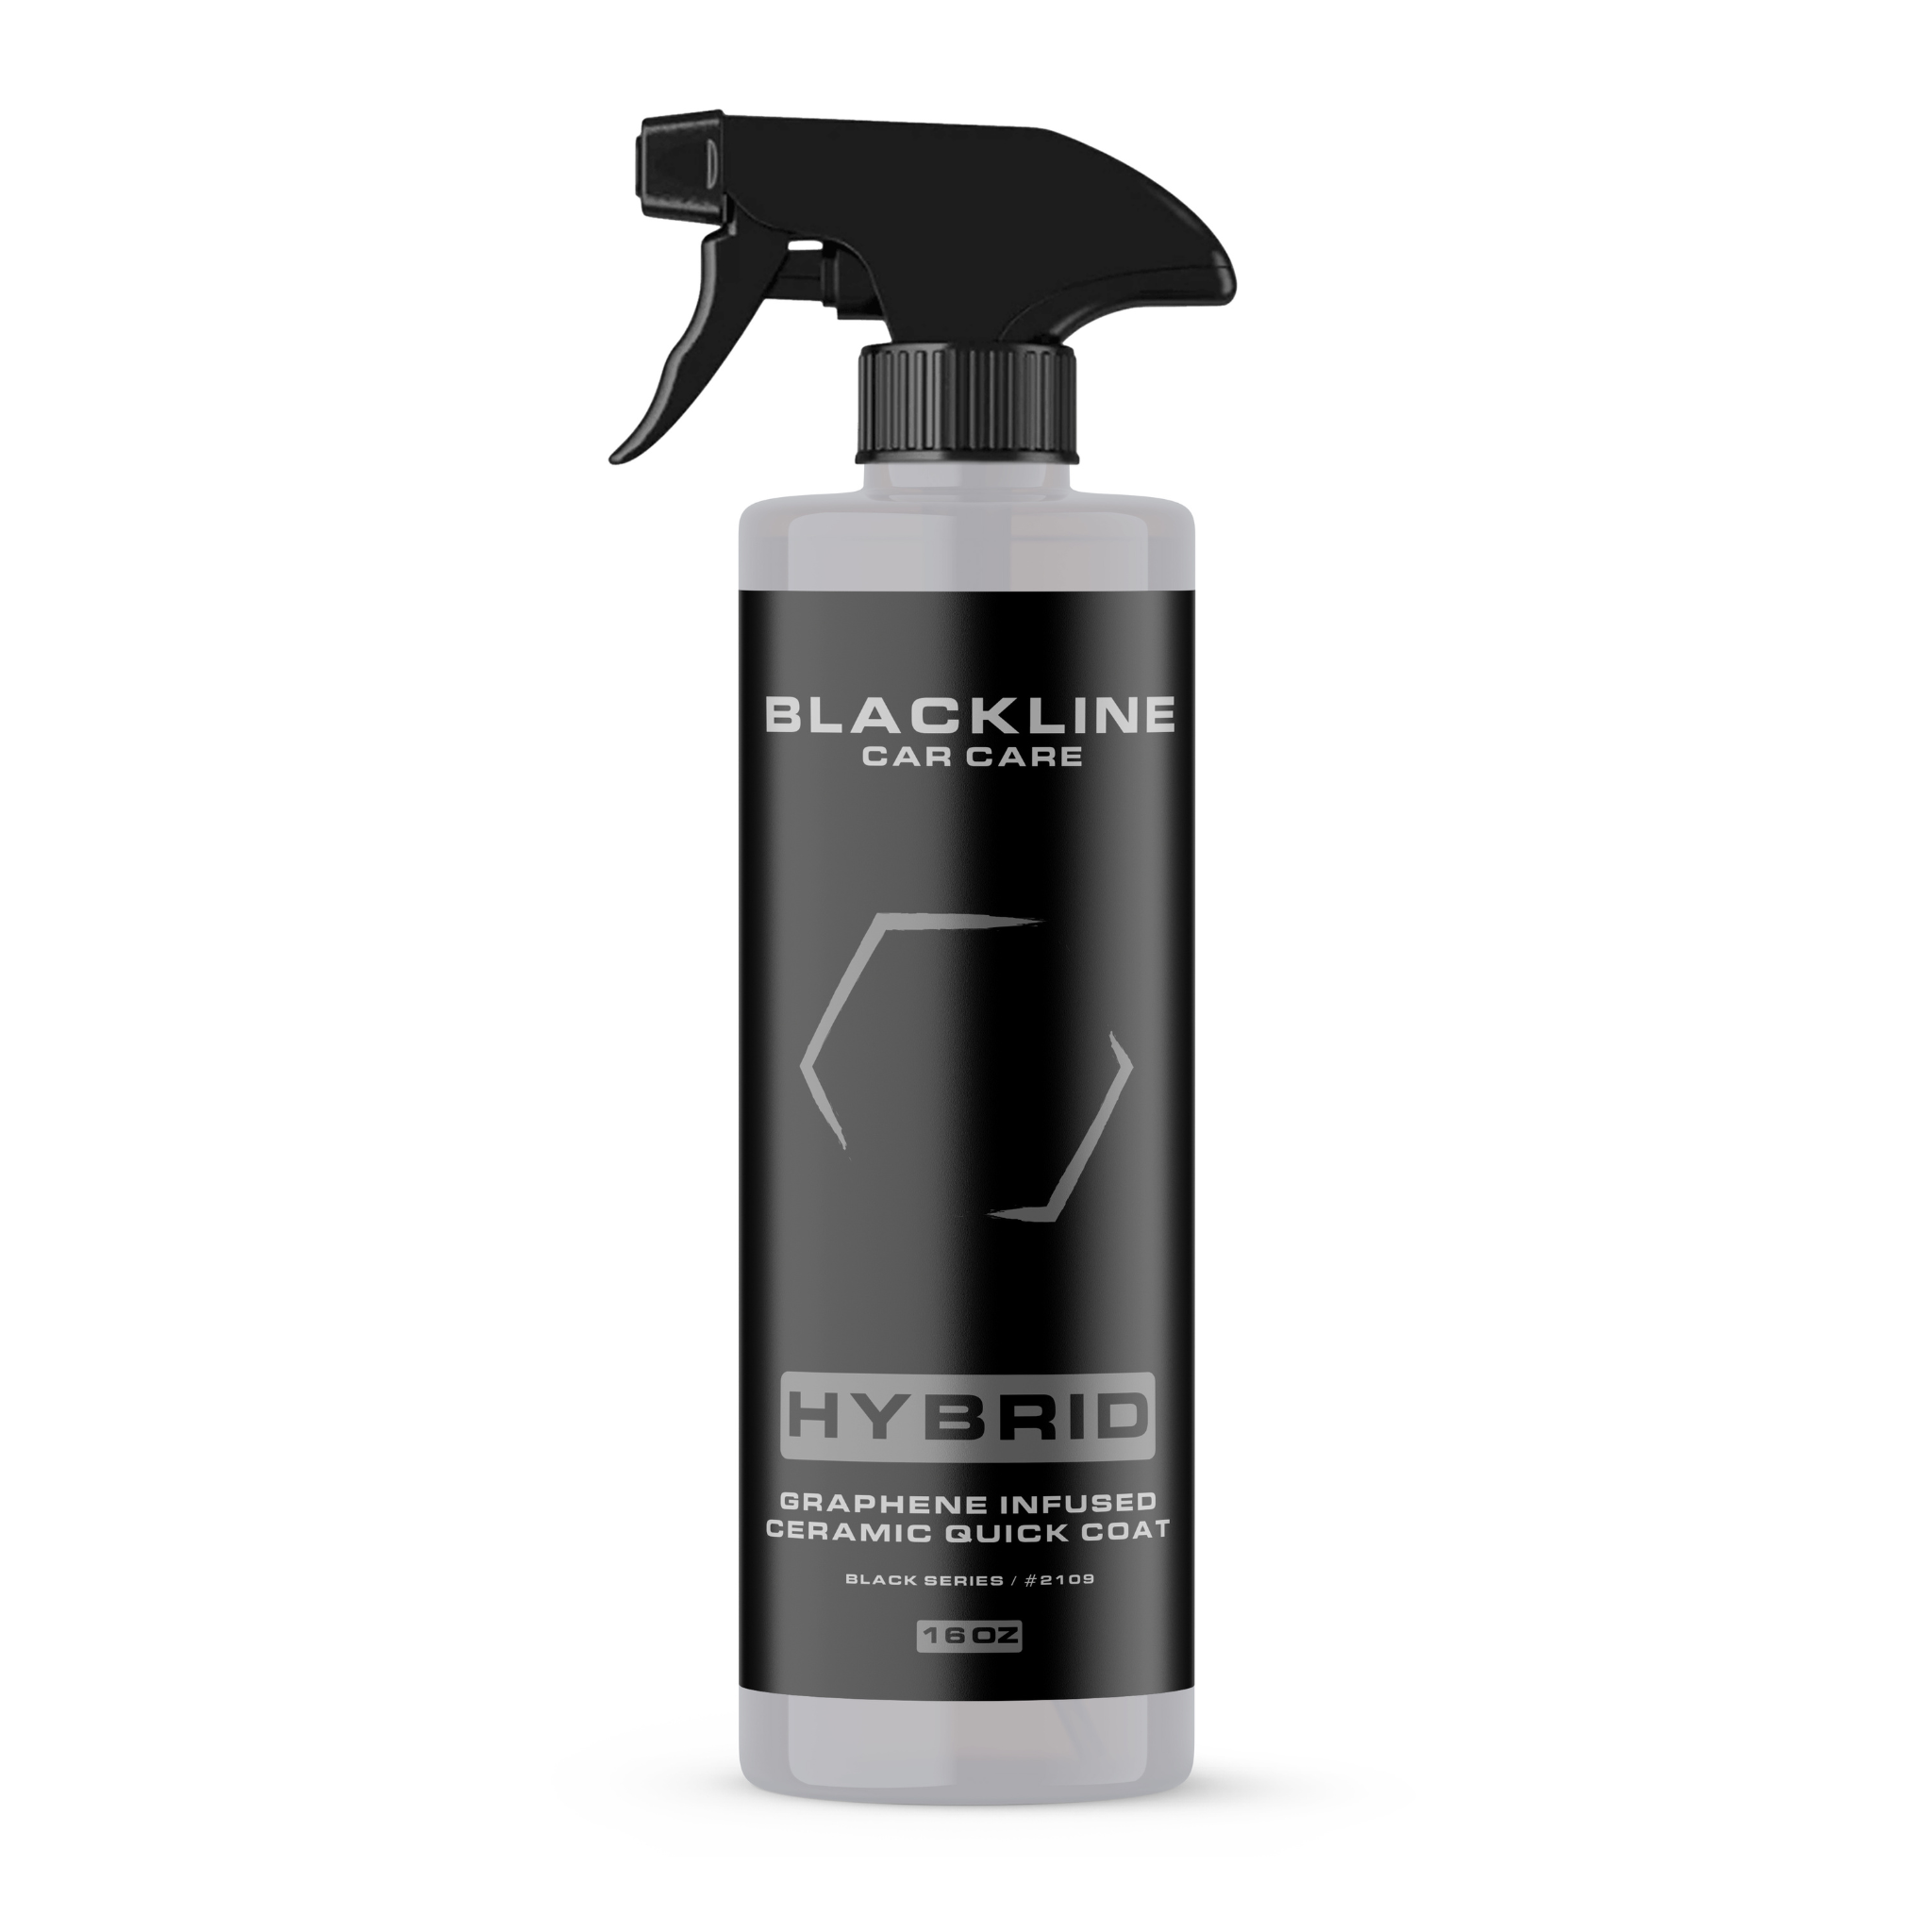 Product reviews!! Blackline foam cannon 